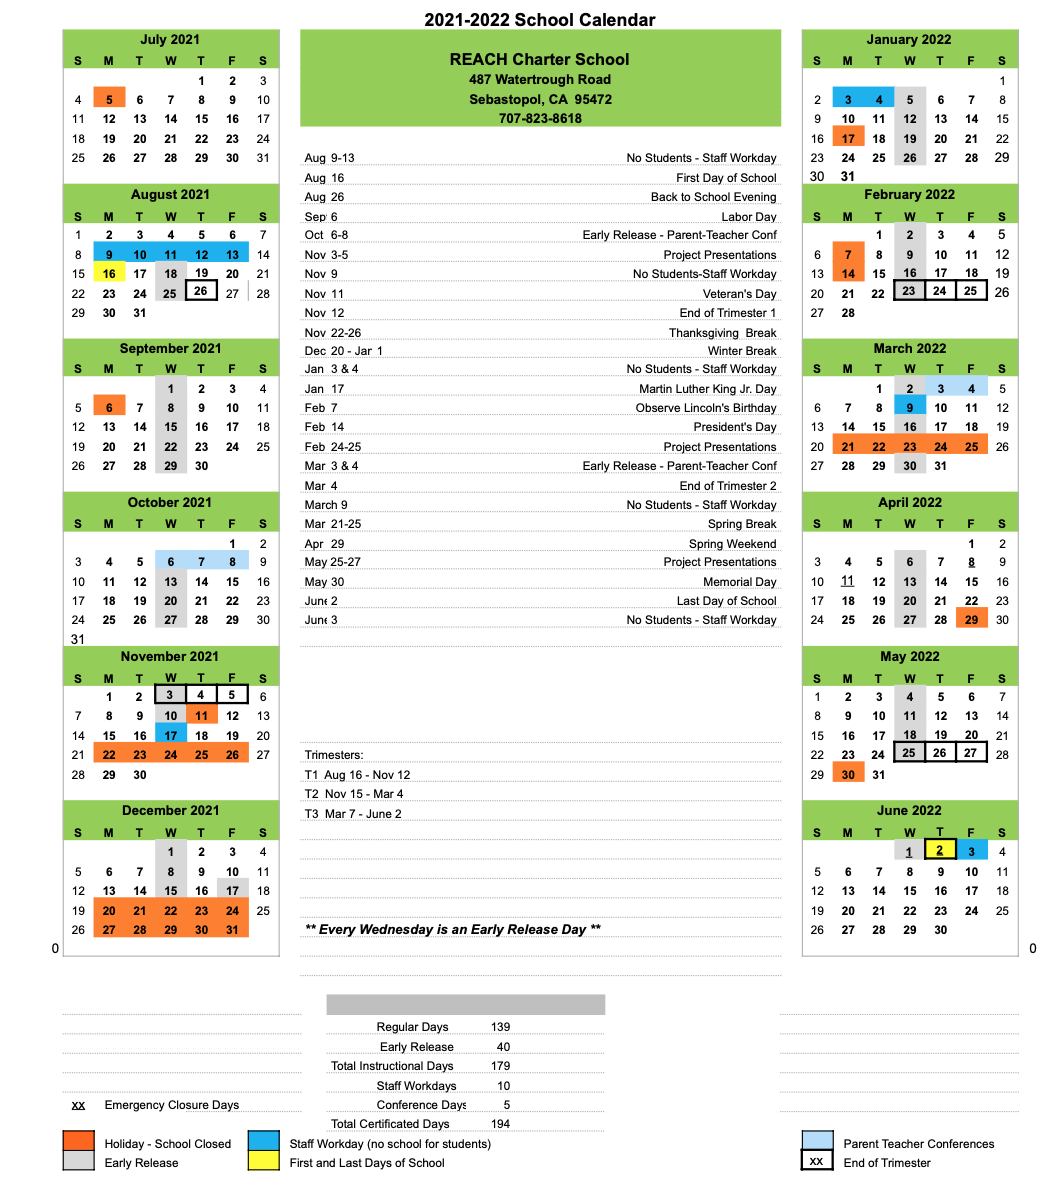 Academic Calendar 202122 REACH Charter School